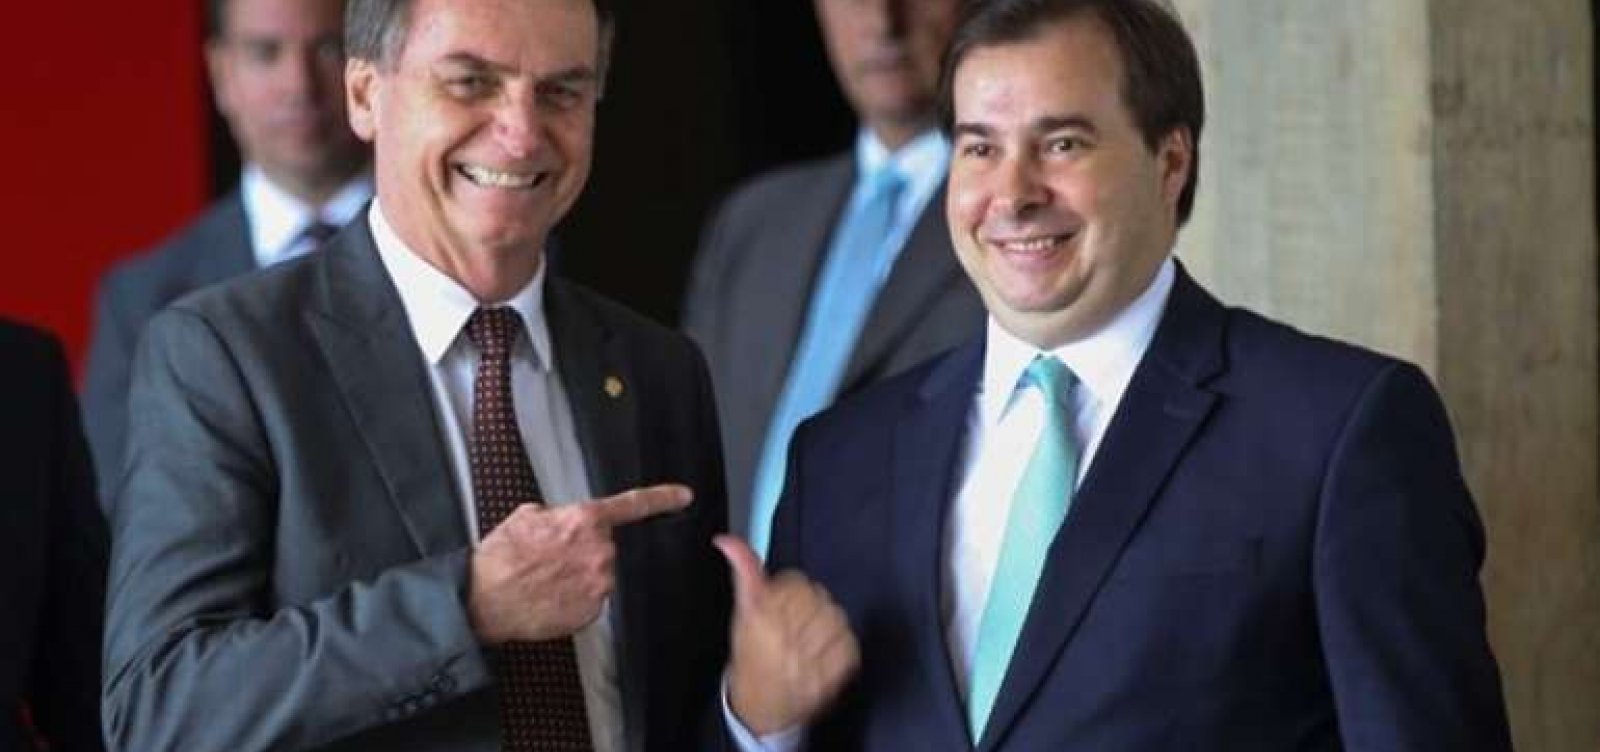 'Daqui para frente é vida nova', diz Onyx sobre a relação entre Bolsonaro e Maia